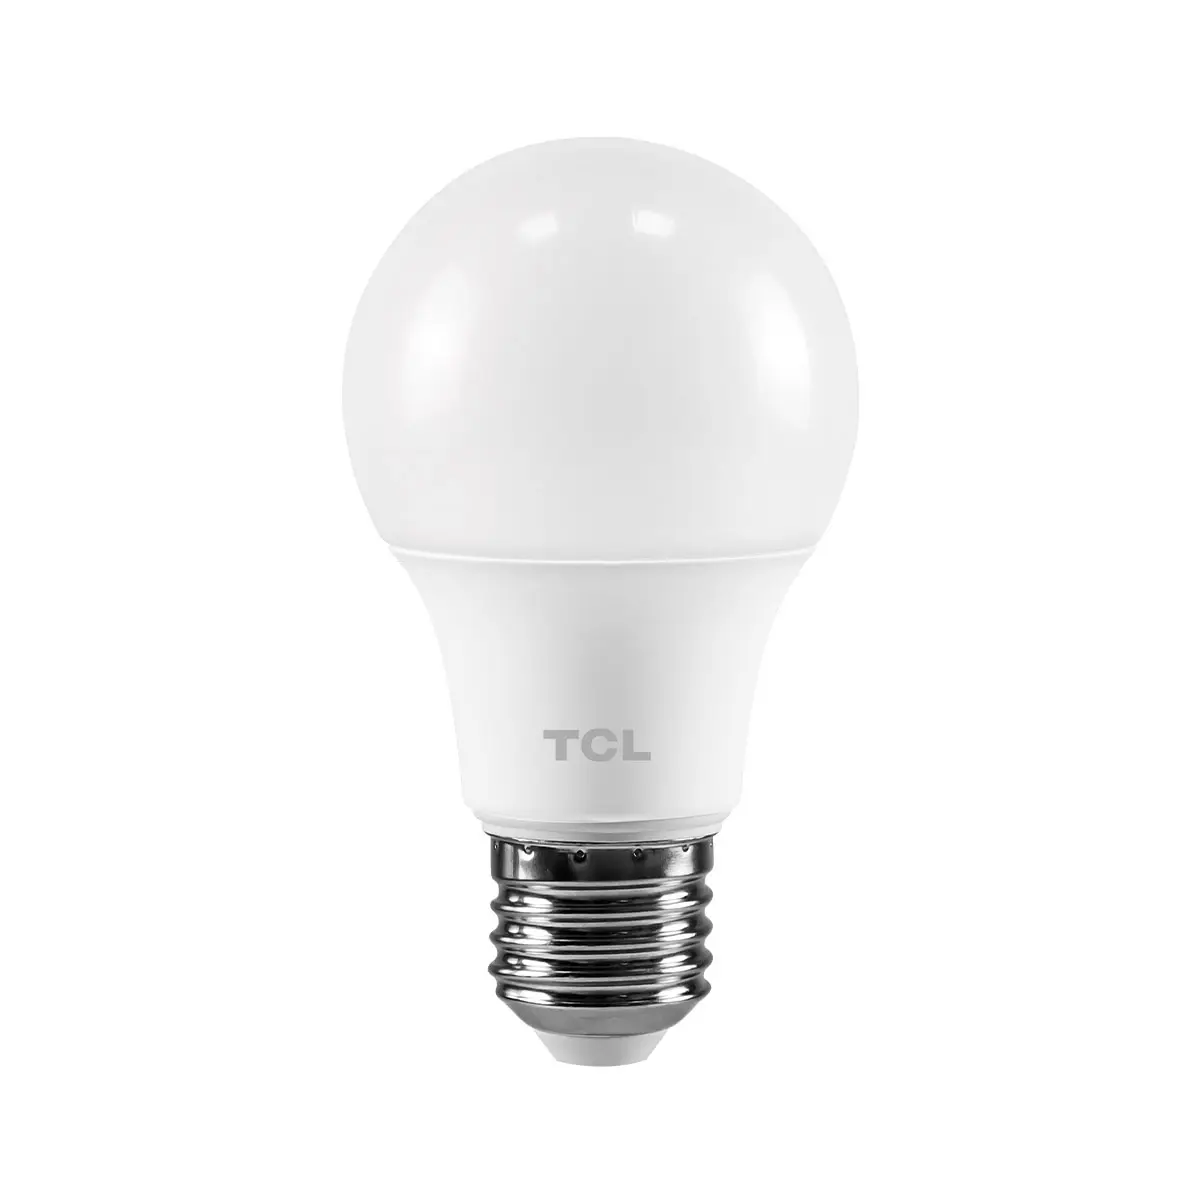 Ampoule LED prix bas vente en gros d'autres ampoules d'éclairage fabricant en Chine ampoule LED pour la maison